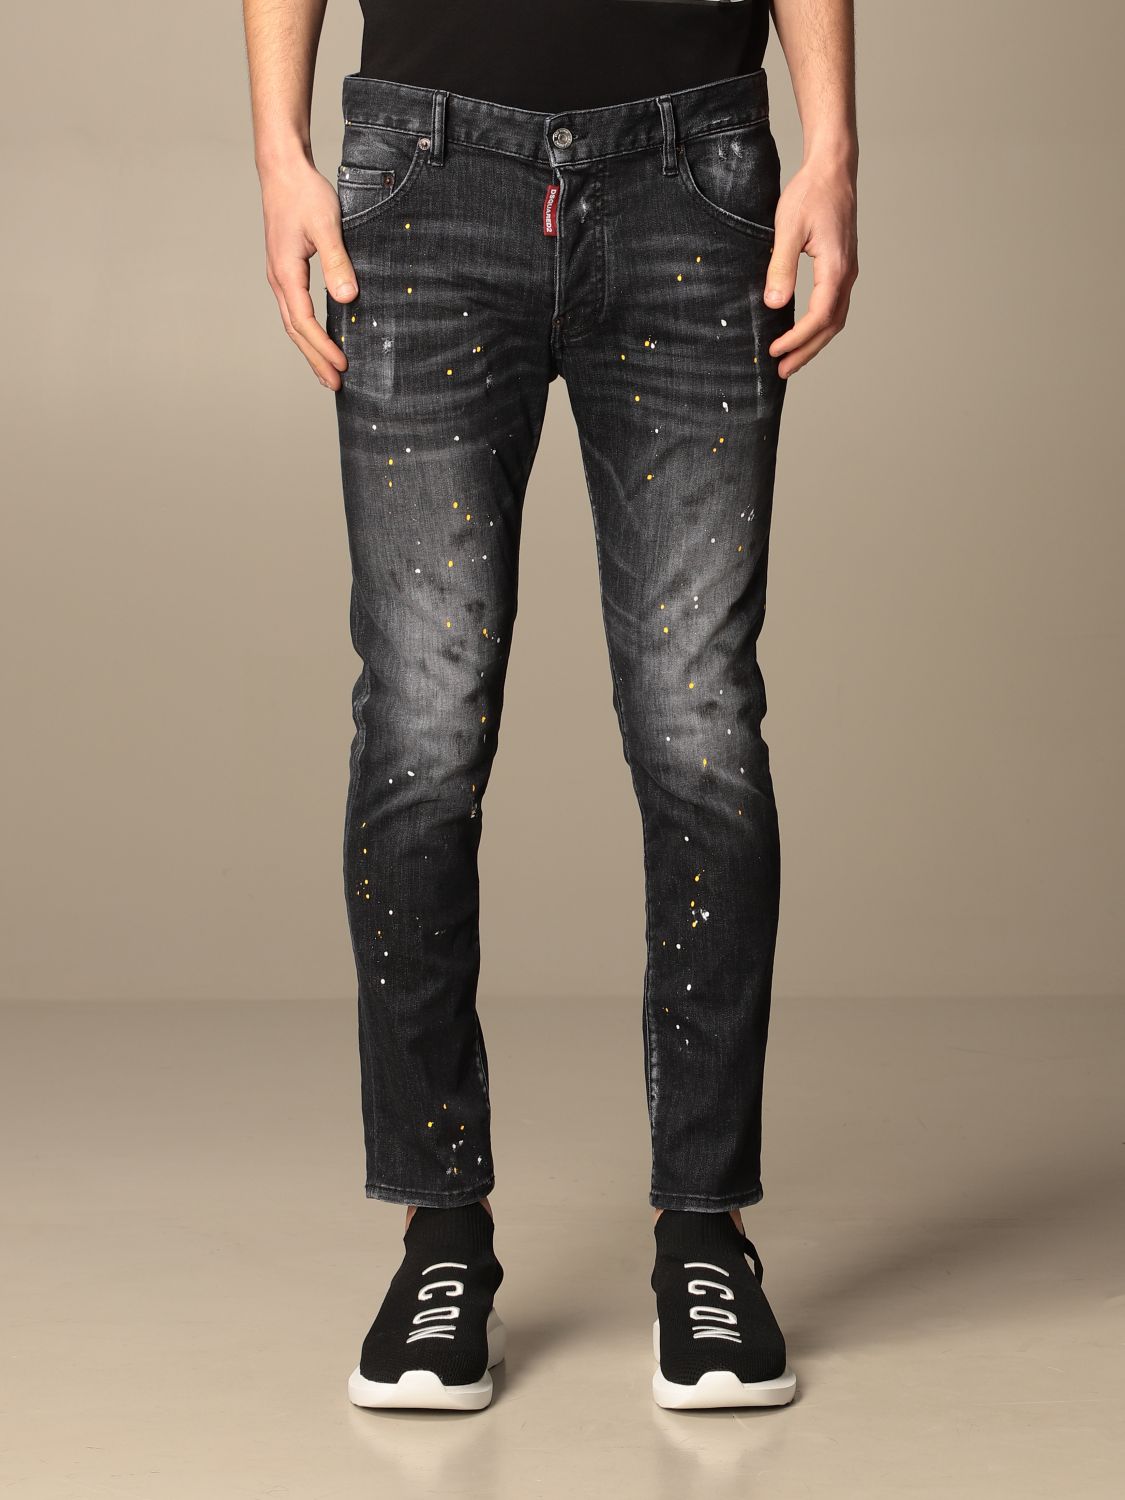 Dsquared2 ICON Jeans Designer New Fashion